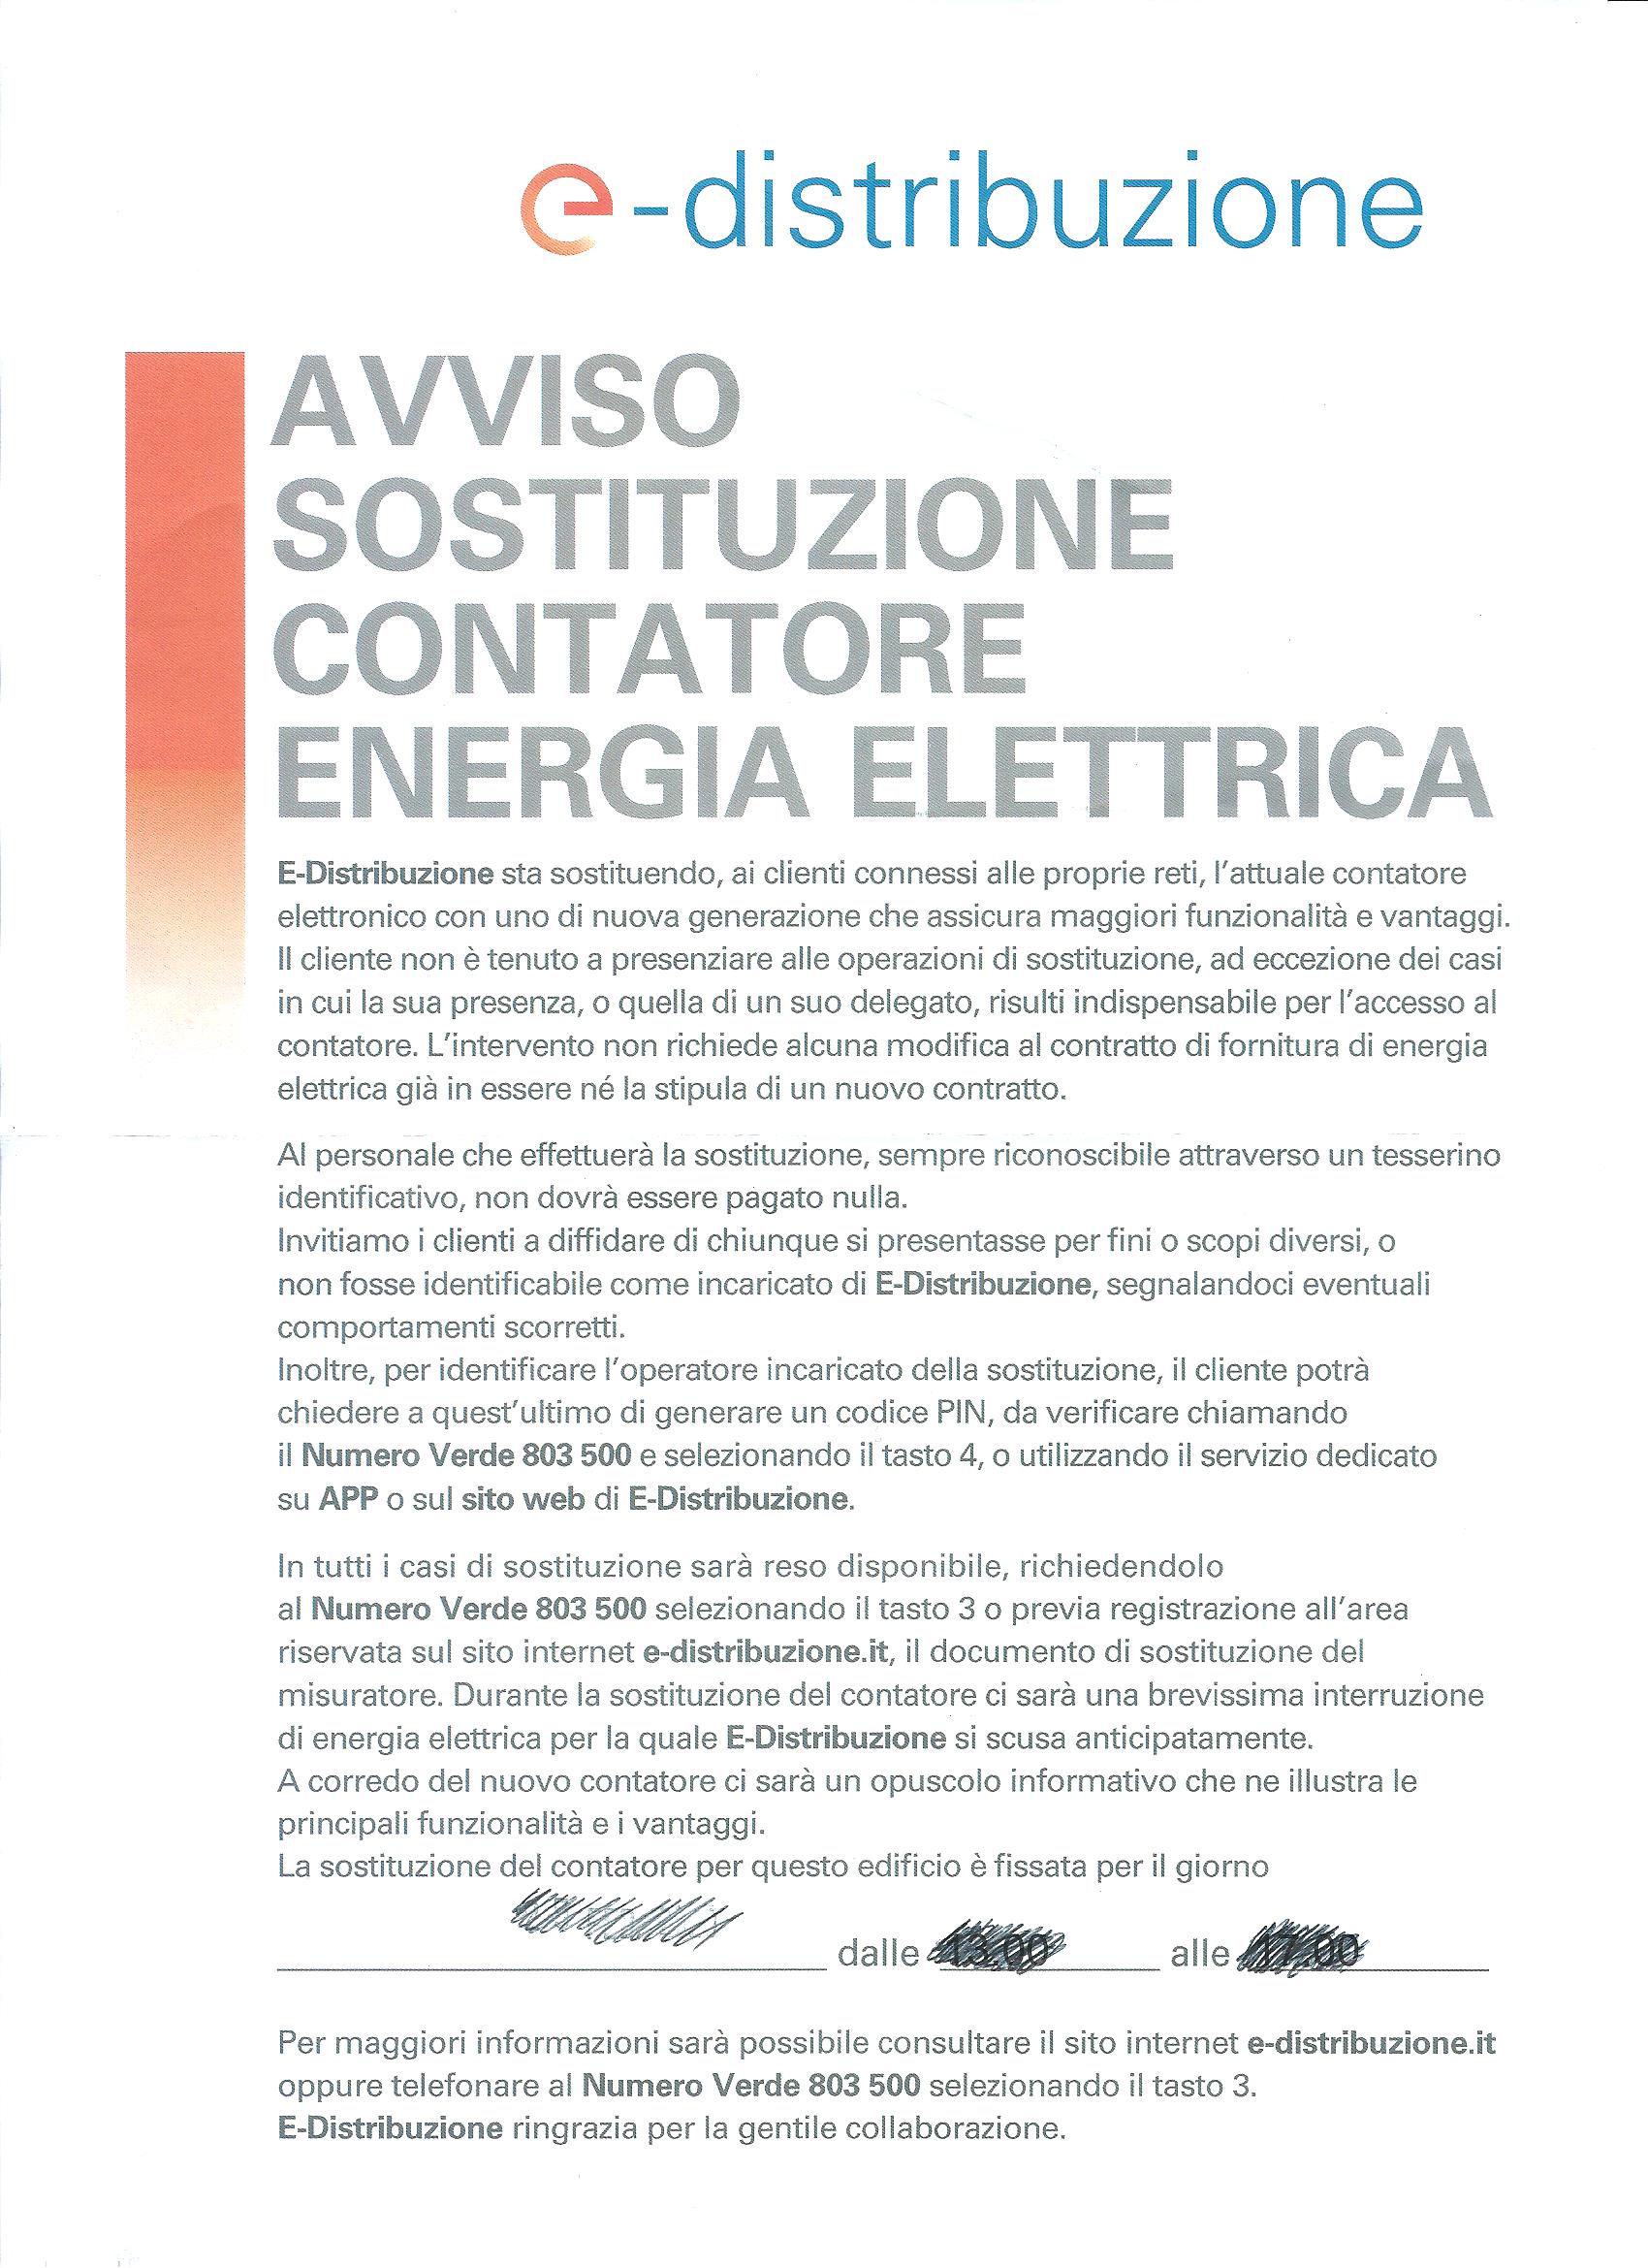 AVVISO SOSTITUZIONE CONTATORE ENERGIA ELETTRICA - Visco